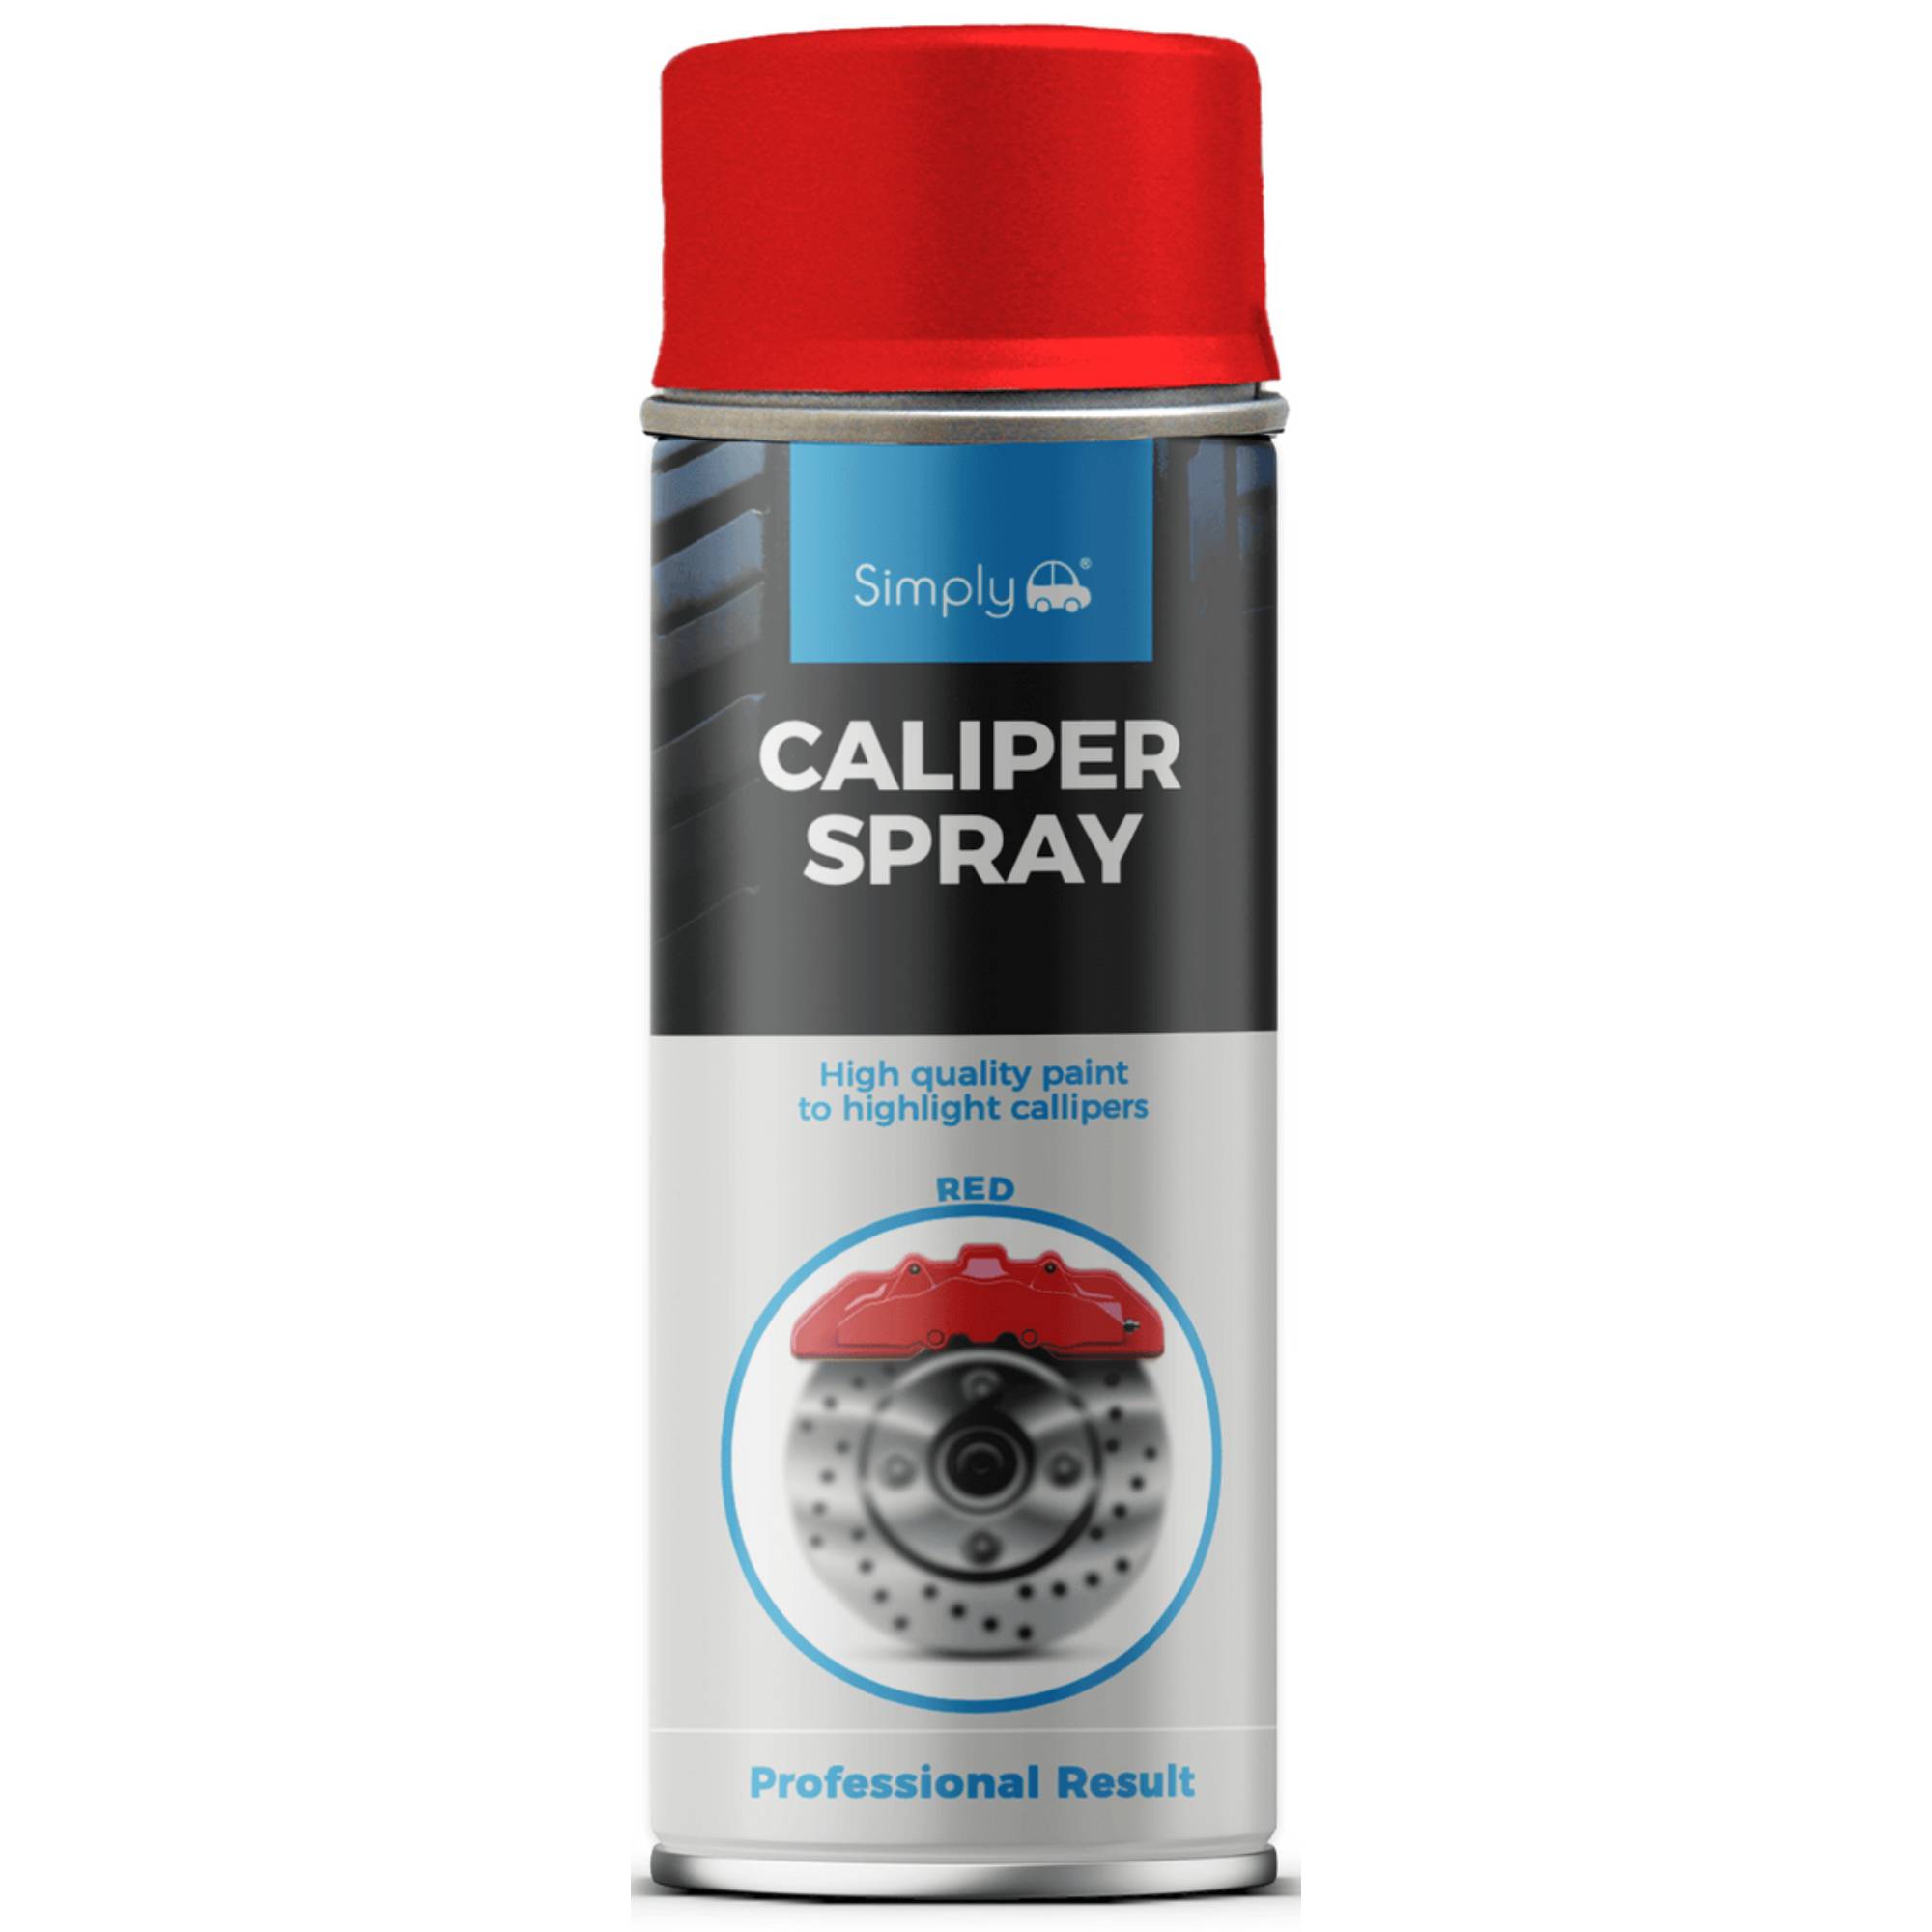 Simply Spray Caliper Spray Red 400ml